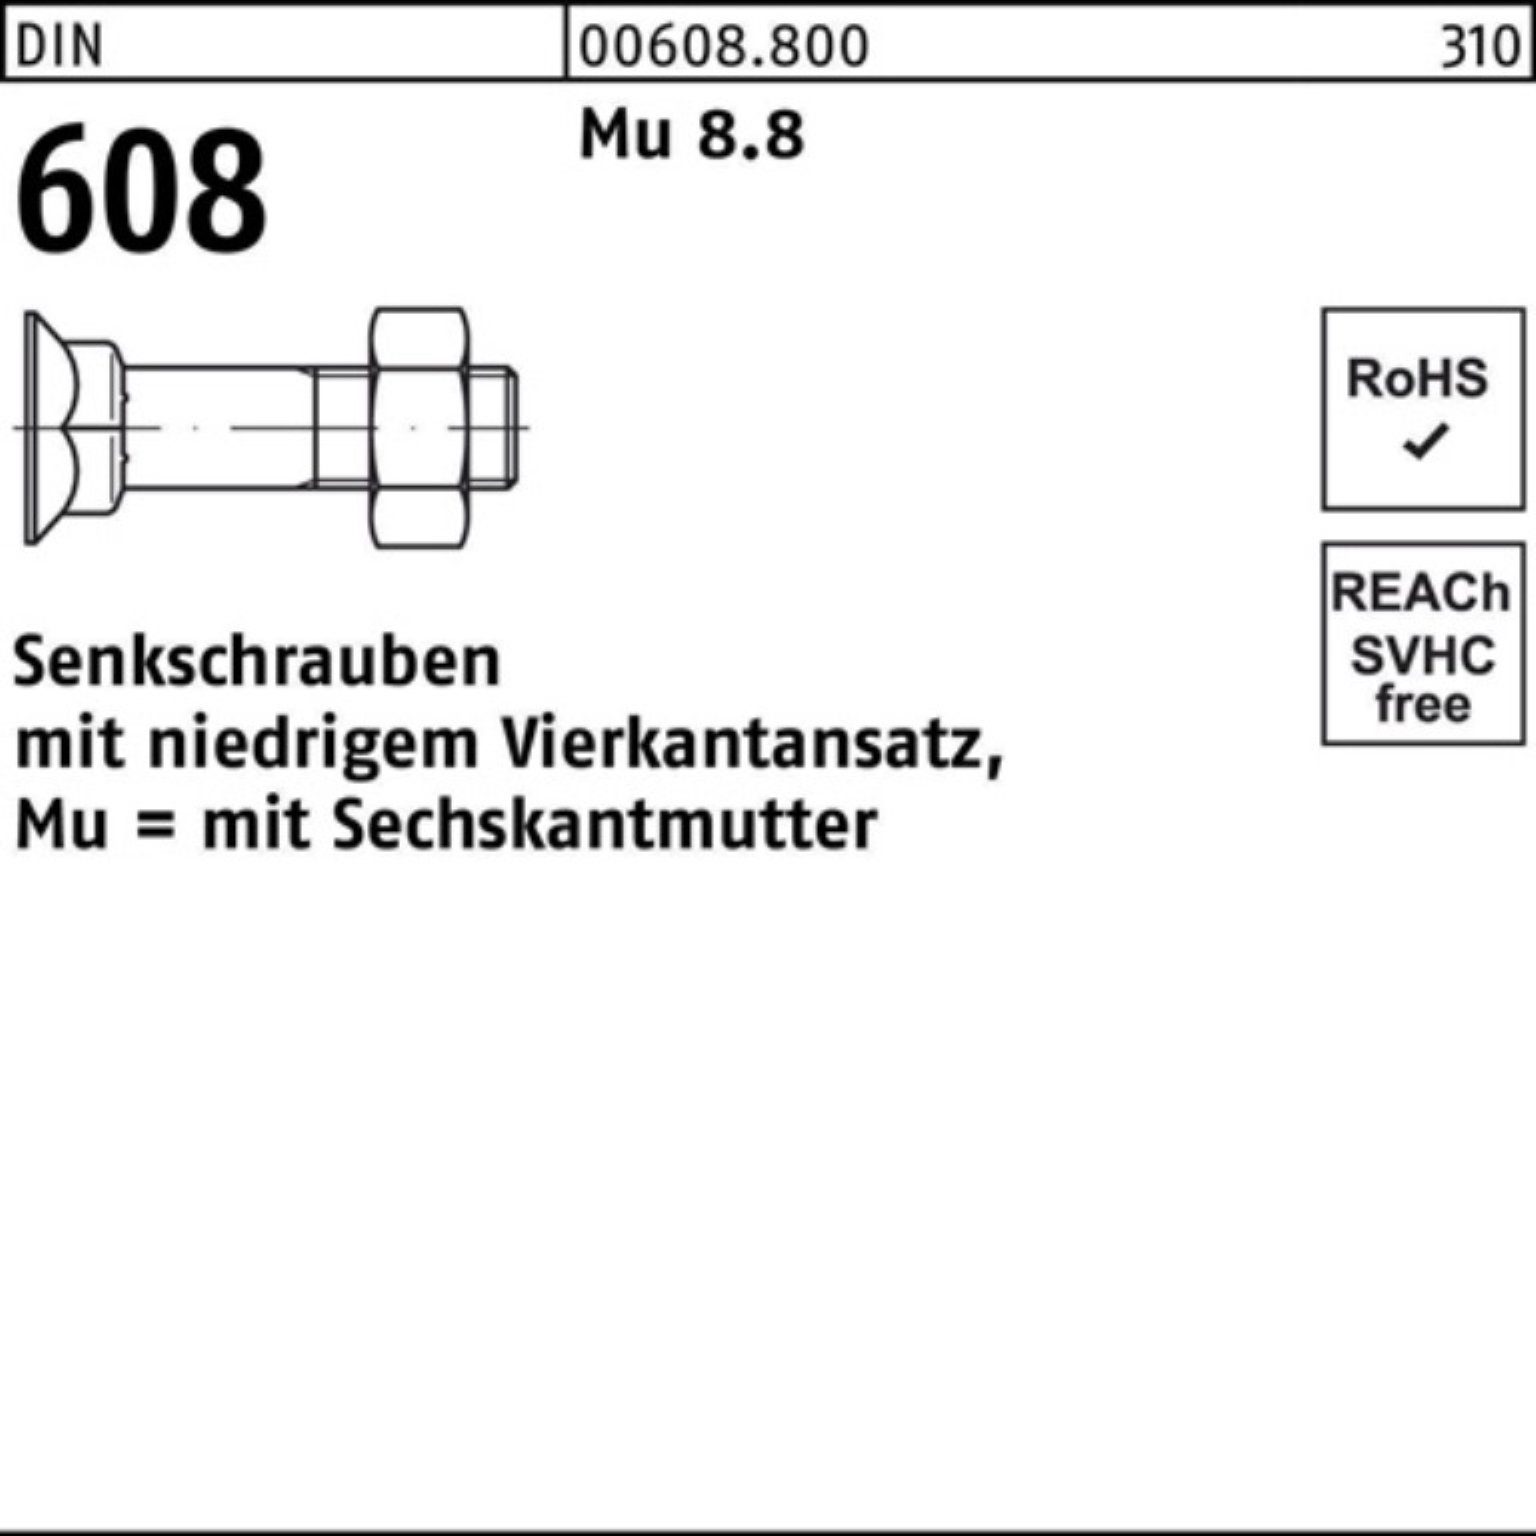 4-ktansatz/6-ktmutter Reyher 100er Senkschraube 70 5 Mu Pack 608 Senkschraube M12x 8.8 DIN